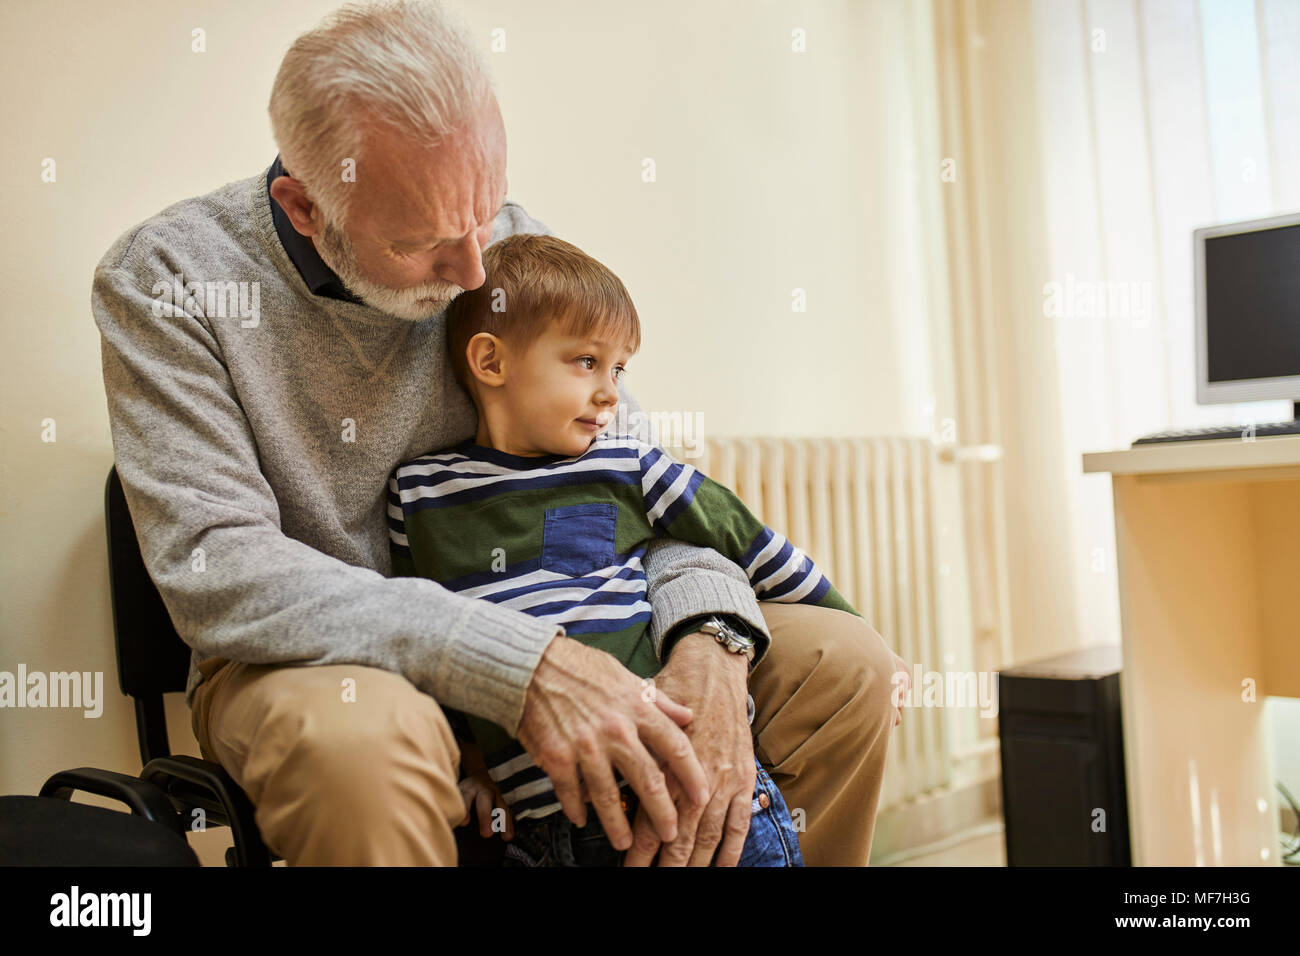 Garçon assis sur les genoux de grand-père dans la salle d'attente Banque D'Images